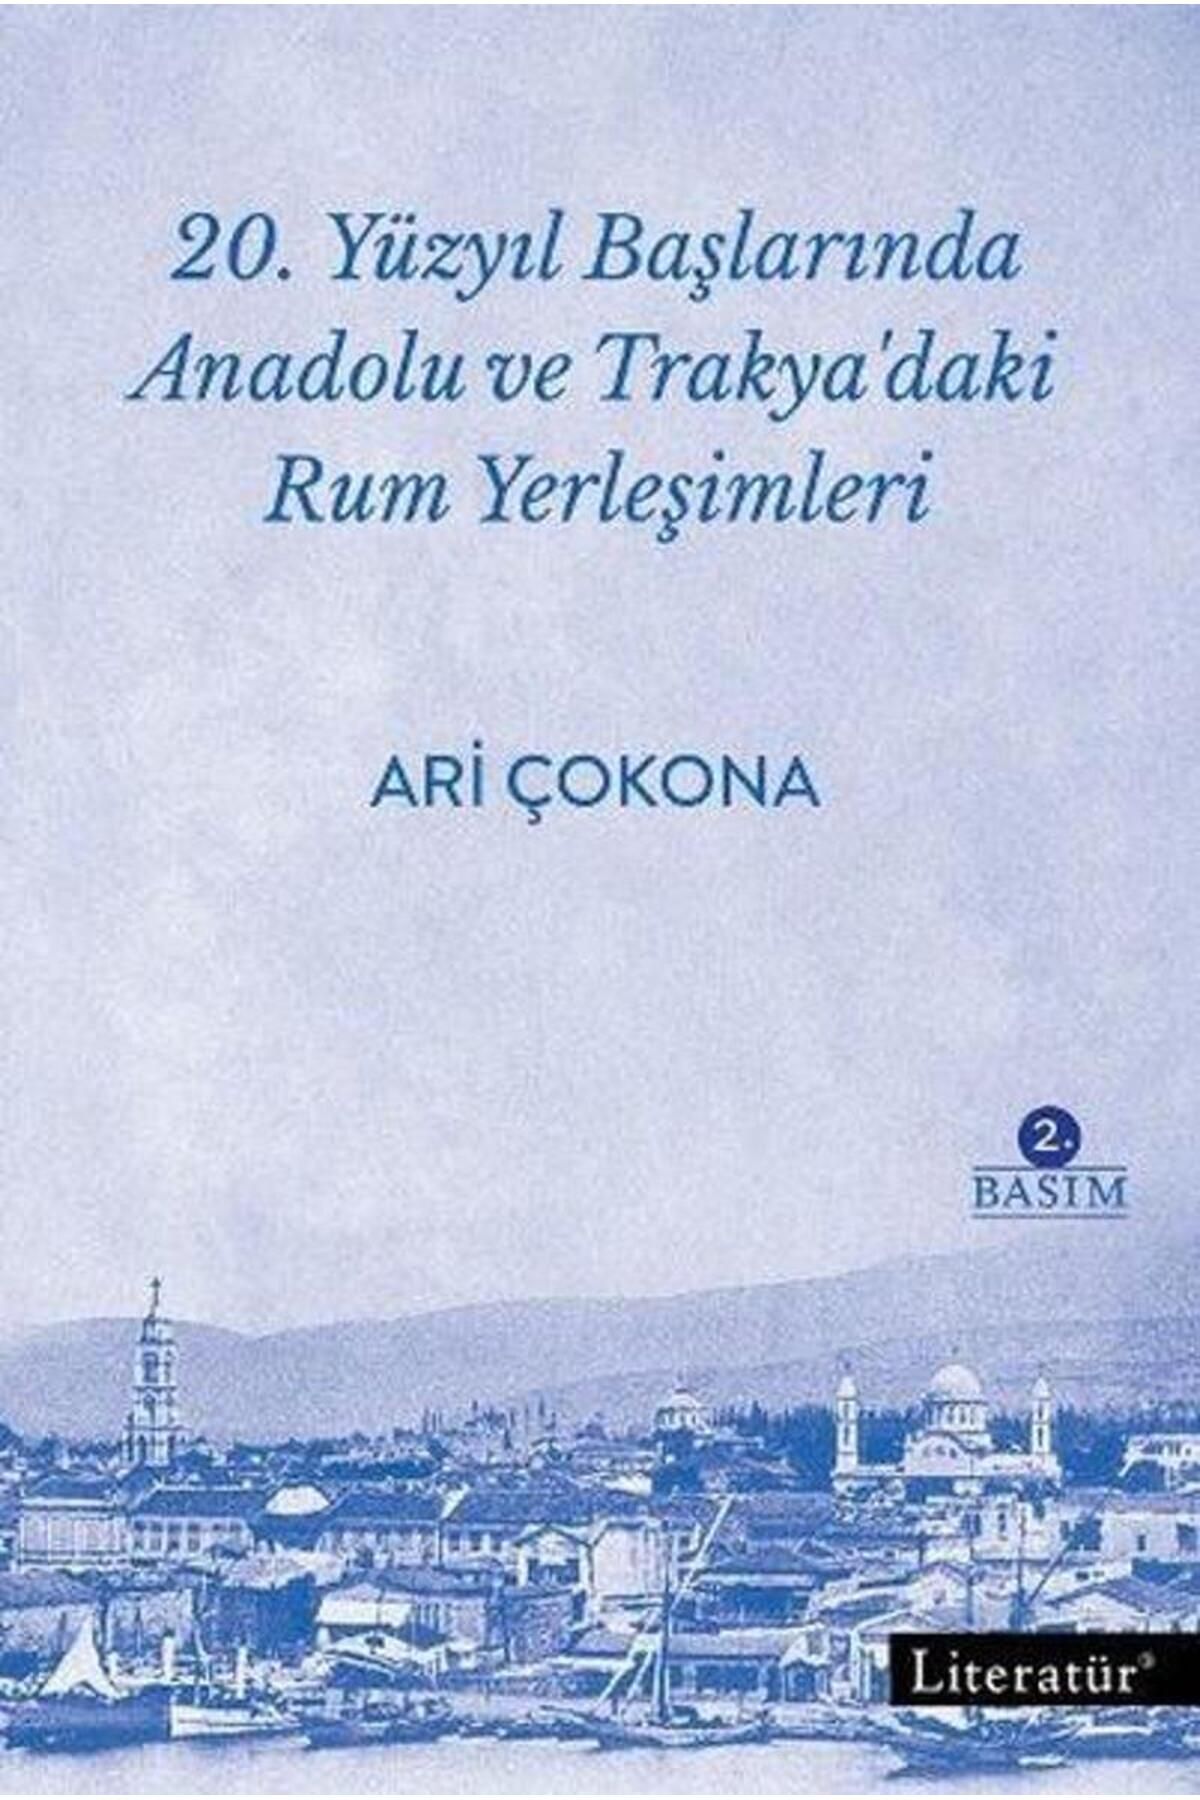 Literatür Yayınları 20.Yüzyıl Başlarında Anadolu ve Trakya'daki Rum Yerleşimleri